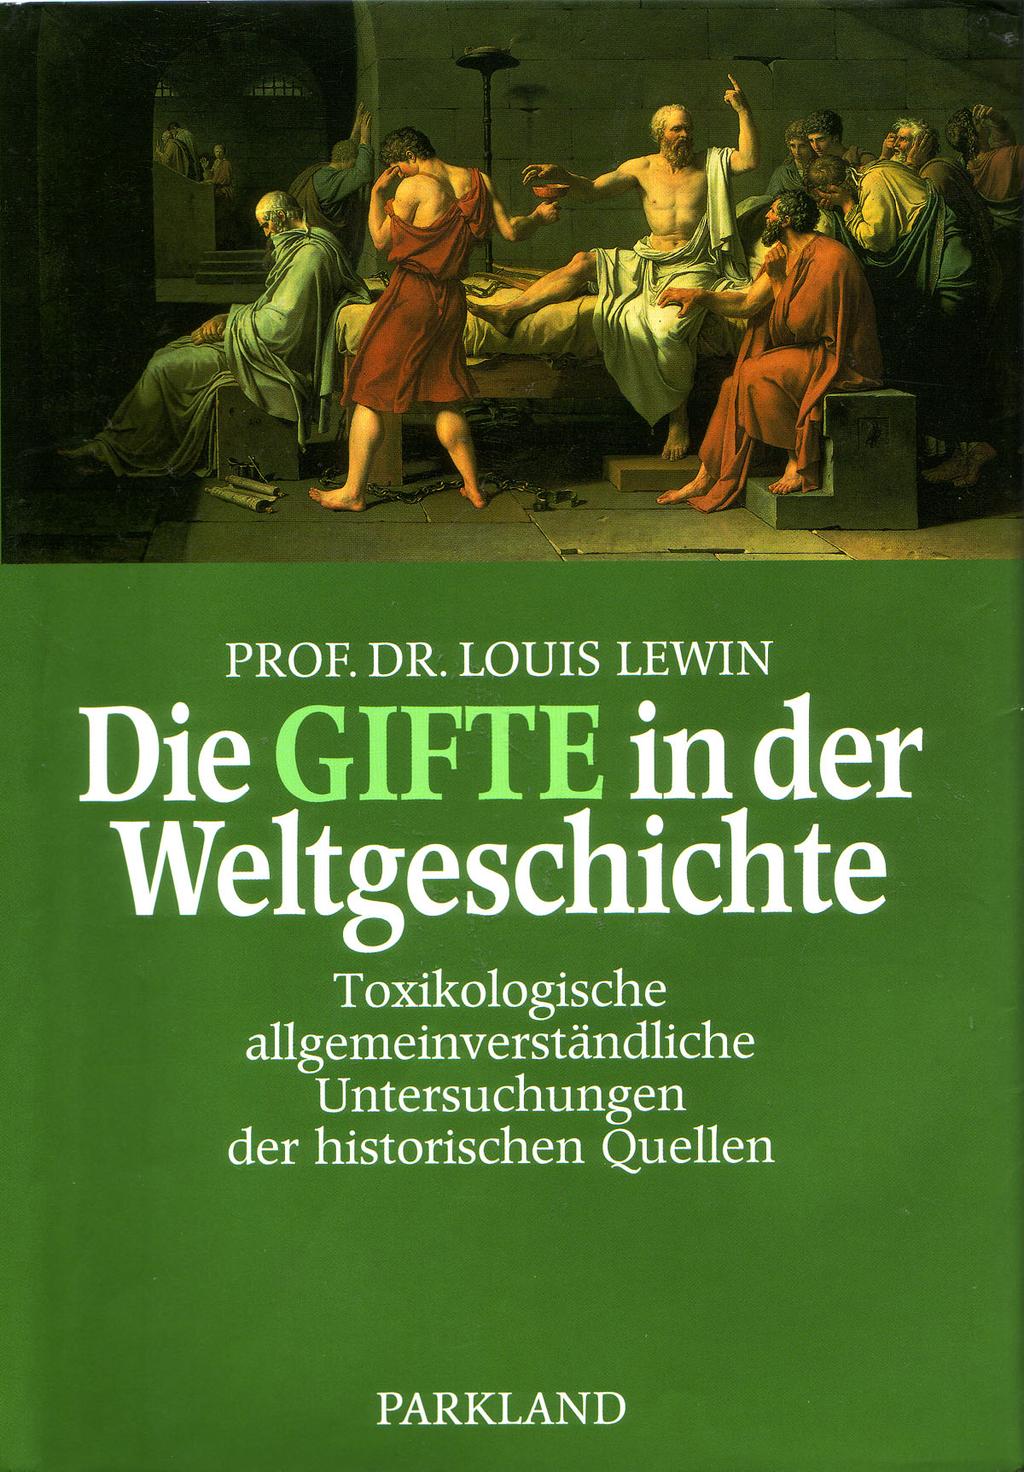 Historie der Toxikologie (Louis Lewin 1920) ist über lange Zeit eine Geschichte der Klinischen Toxikologie Klinische Toxikologie.